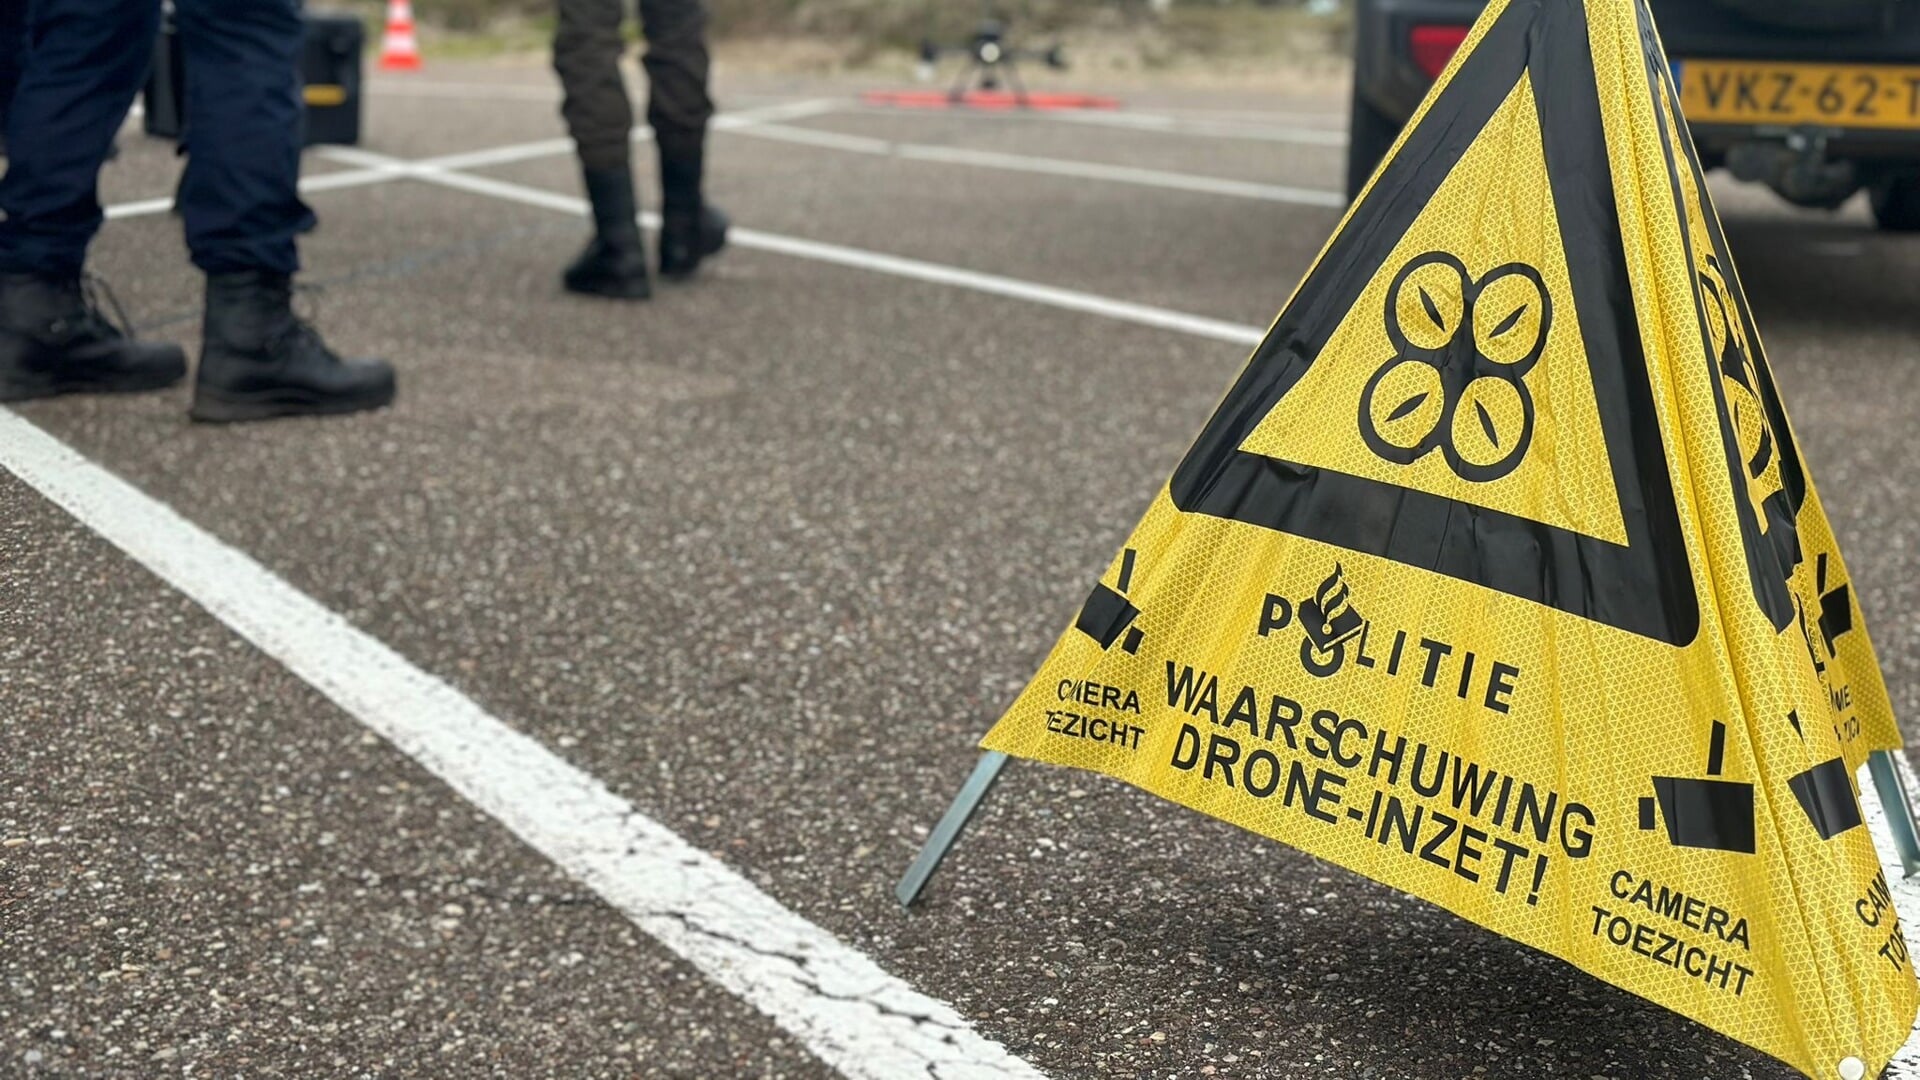 De politie en Staatsbosbeheer zetten drones in voor opsporing tijdens het broedseizoen. | Foto: TvdM